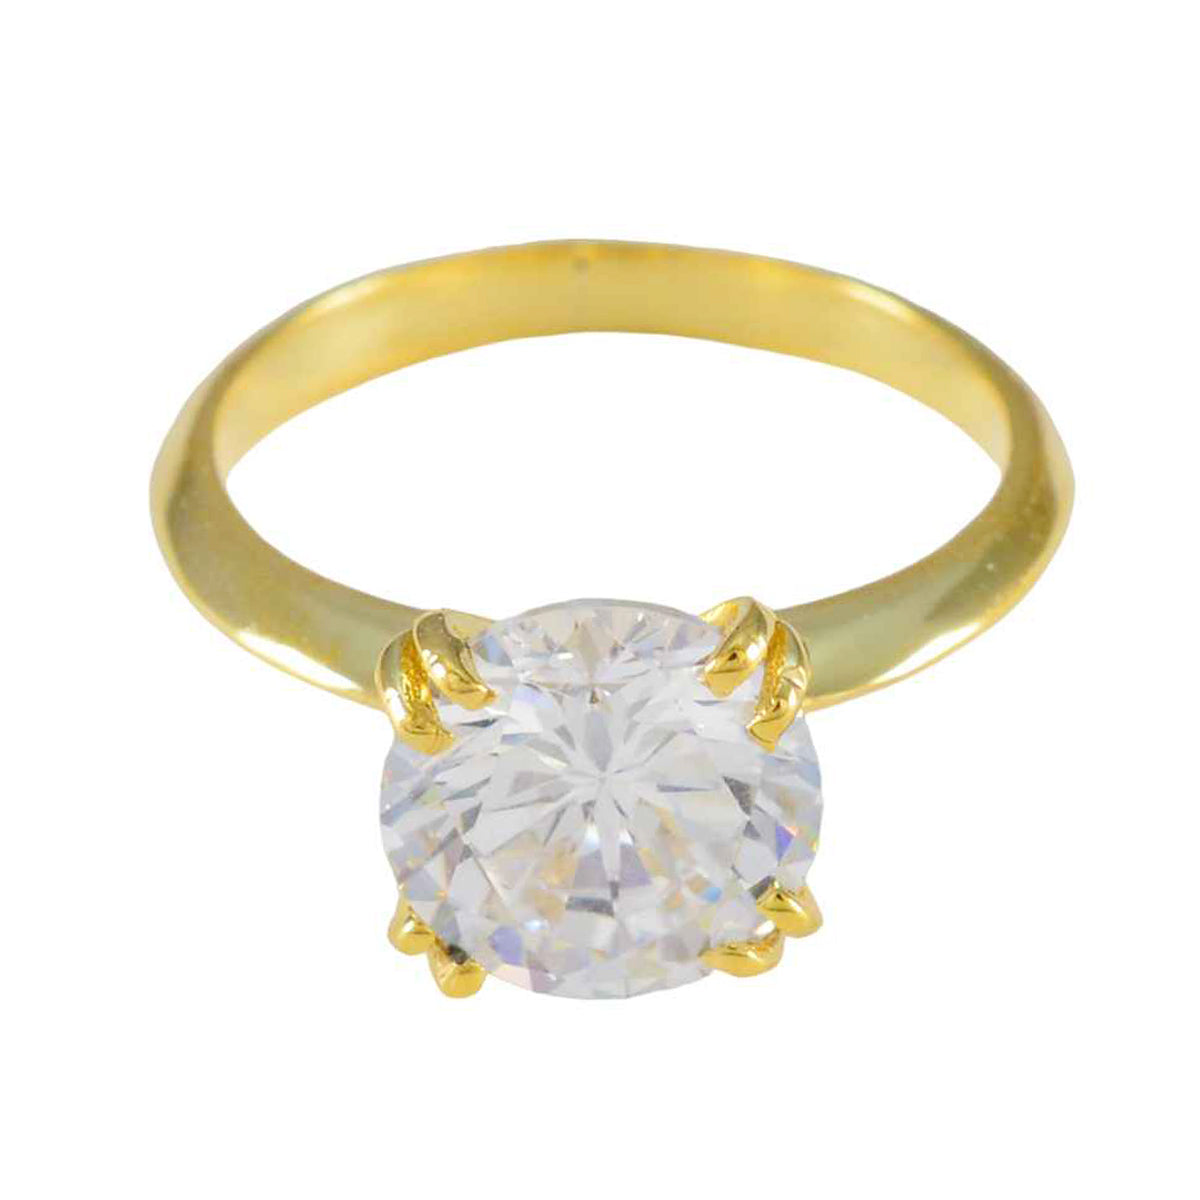 Anillo de plata a granel riyo con anillo de compromiso con engaste de punta de forma redonda de piedra cz blanca chapado en oro amarillo